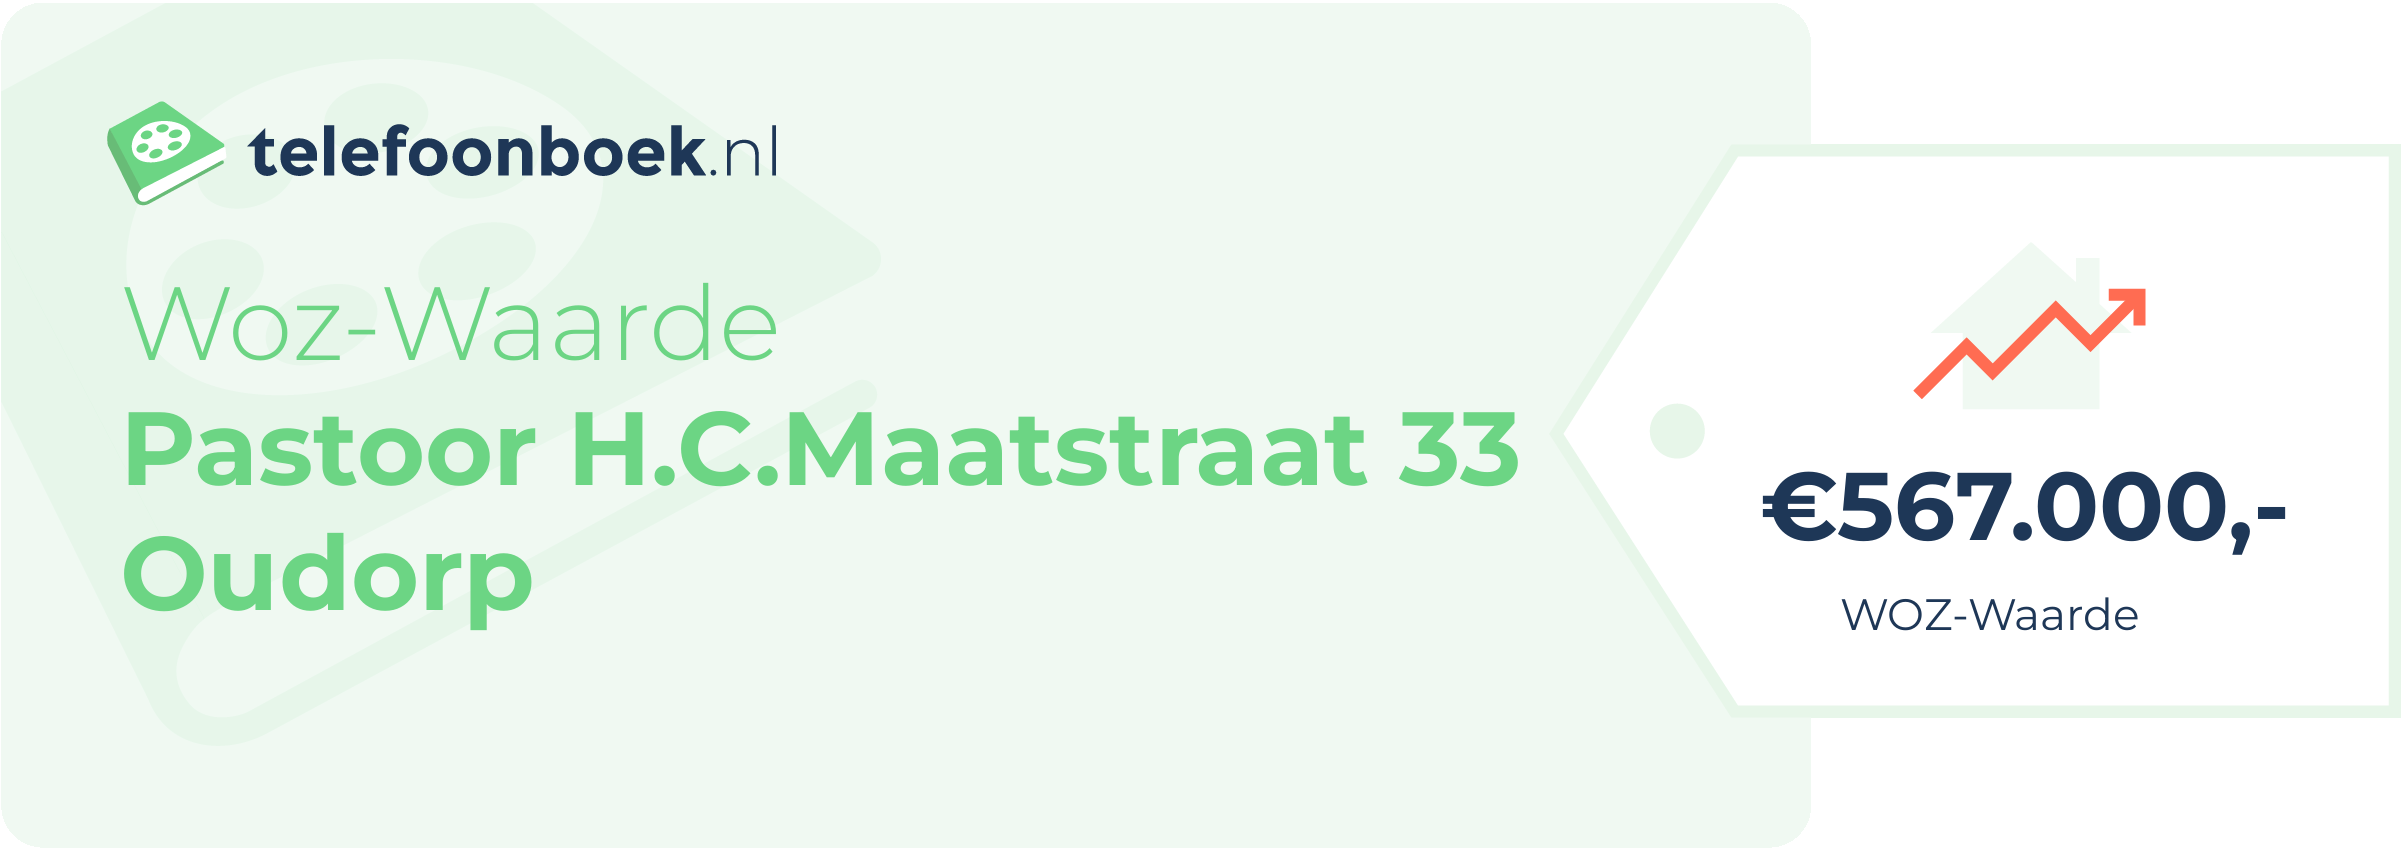 WOZ-waarde Pastoor H.C.Maatstraat 33 Oudorp